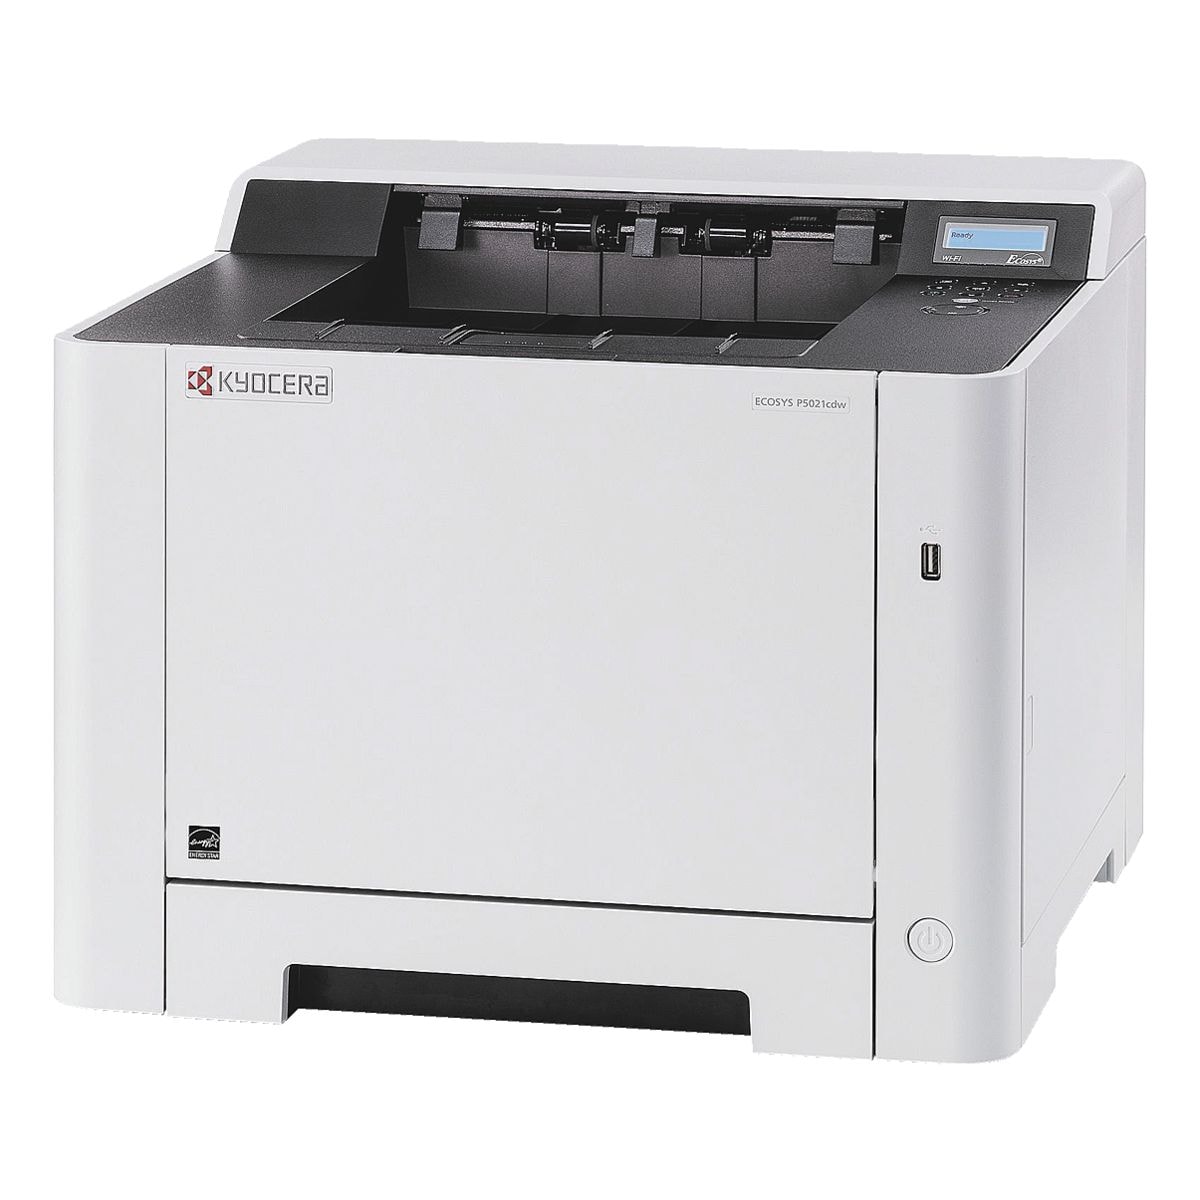 Kyocera ECOSYS P5021cdw Laserdrucker, A4 Farb-Laserdrucker, 1200 x 1200 dpi, mit LAN und WLAN